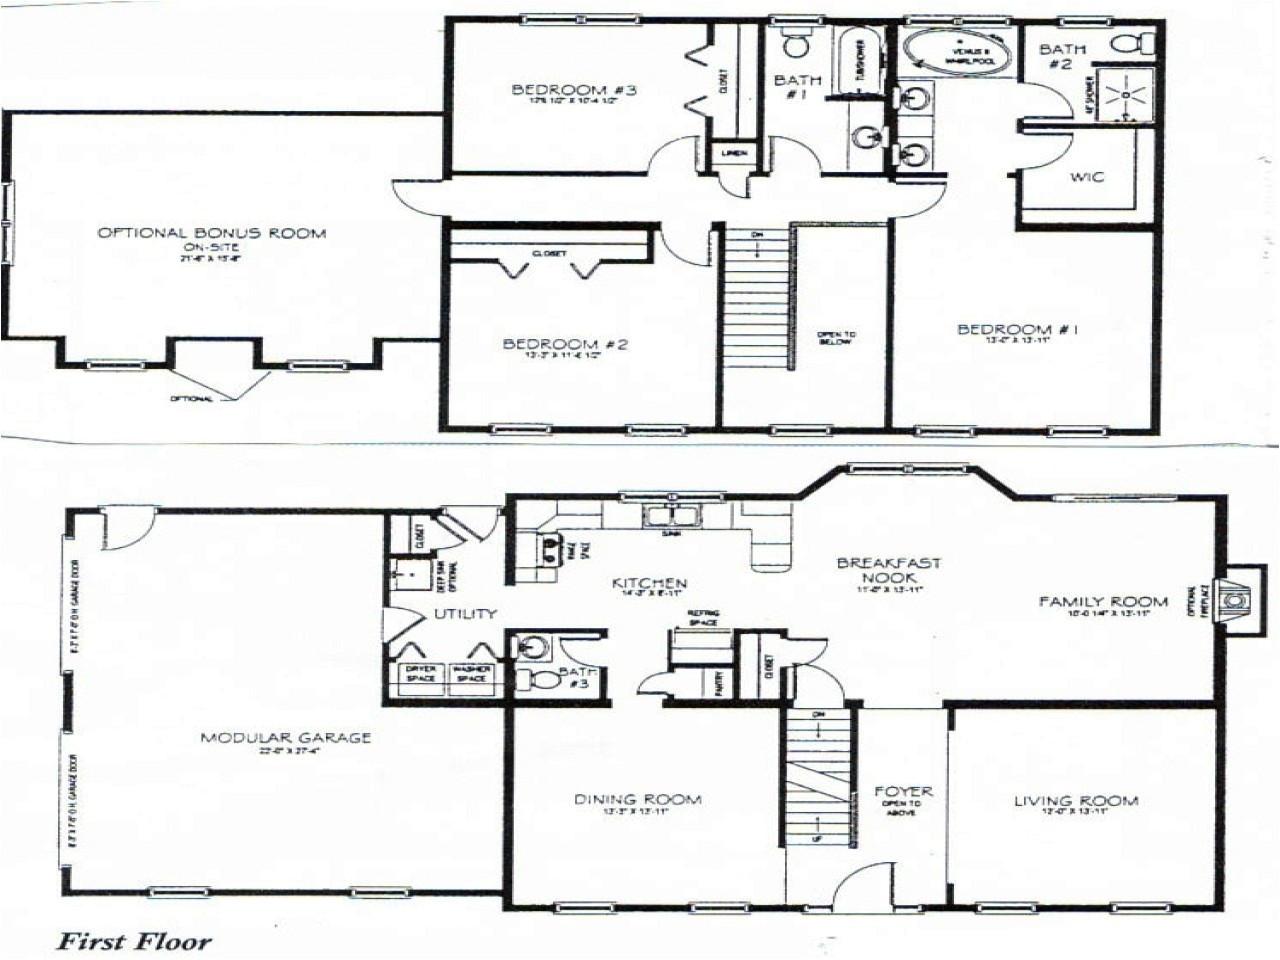 37bd93d254d95835 2 story 3 bedroom house plans vdara two bedroom loft